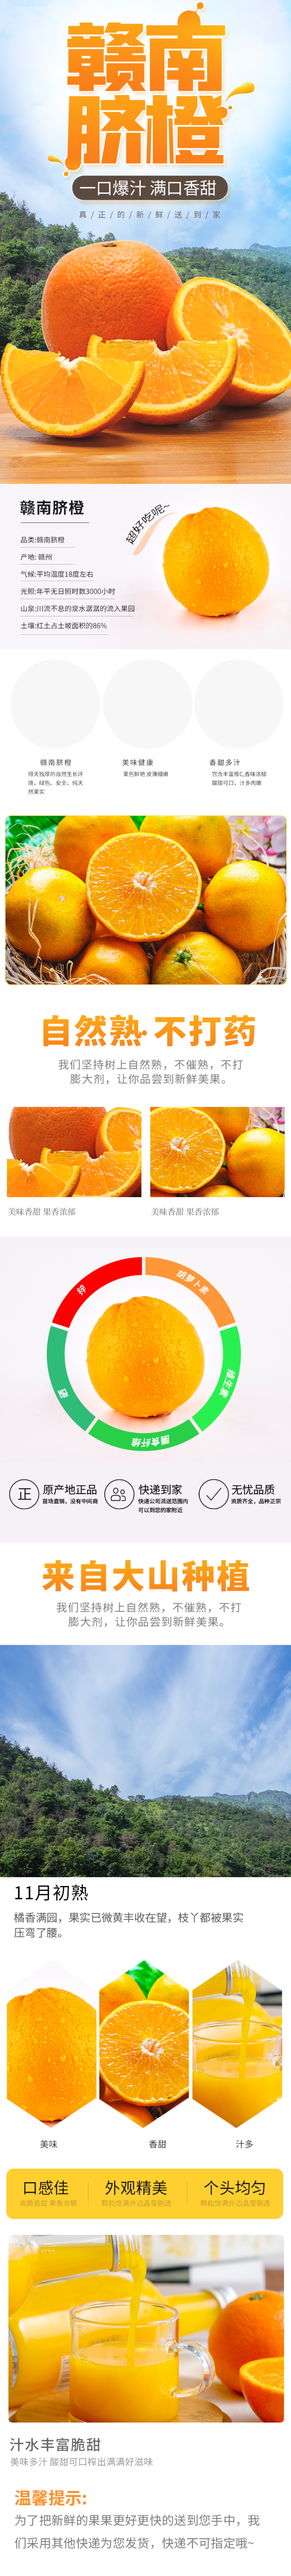 脐橙广告语图片